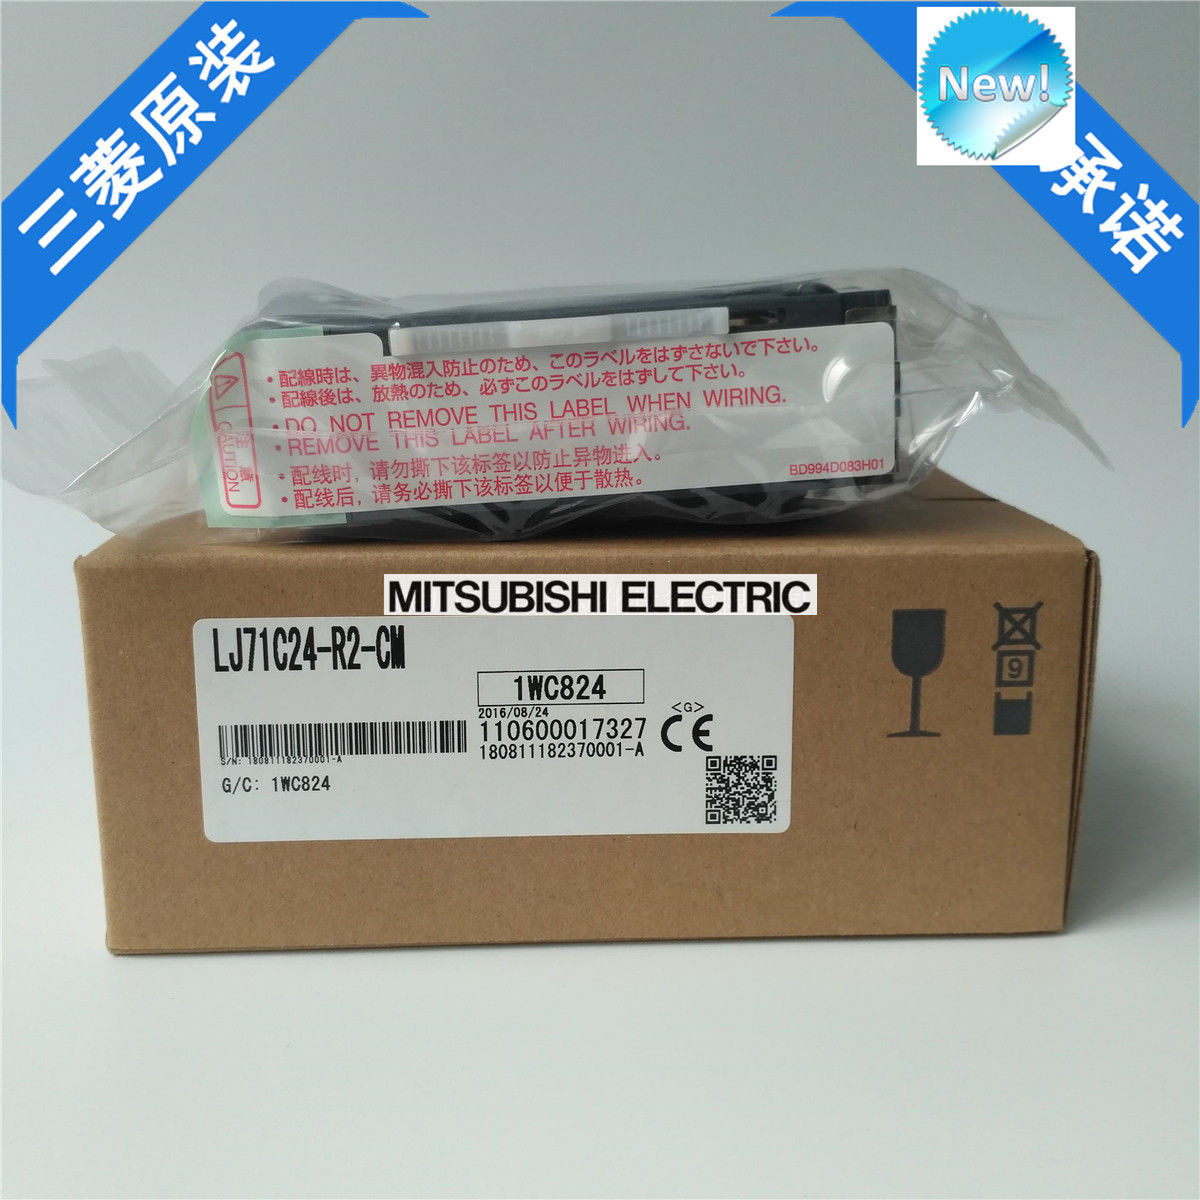 New Mitsubishi LJ71C24-R2-CM Serial Communication Module LJ71C24R2CM